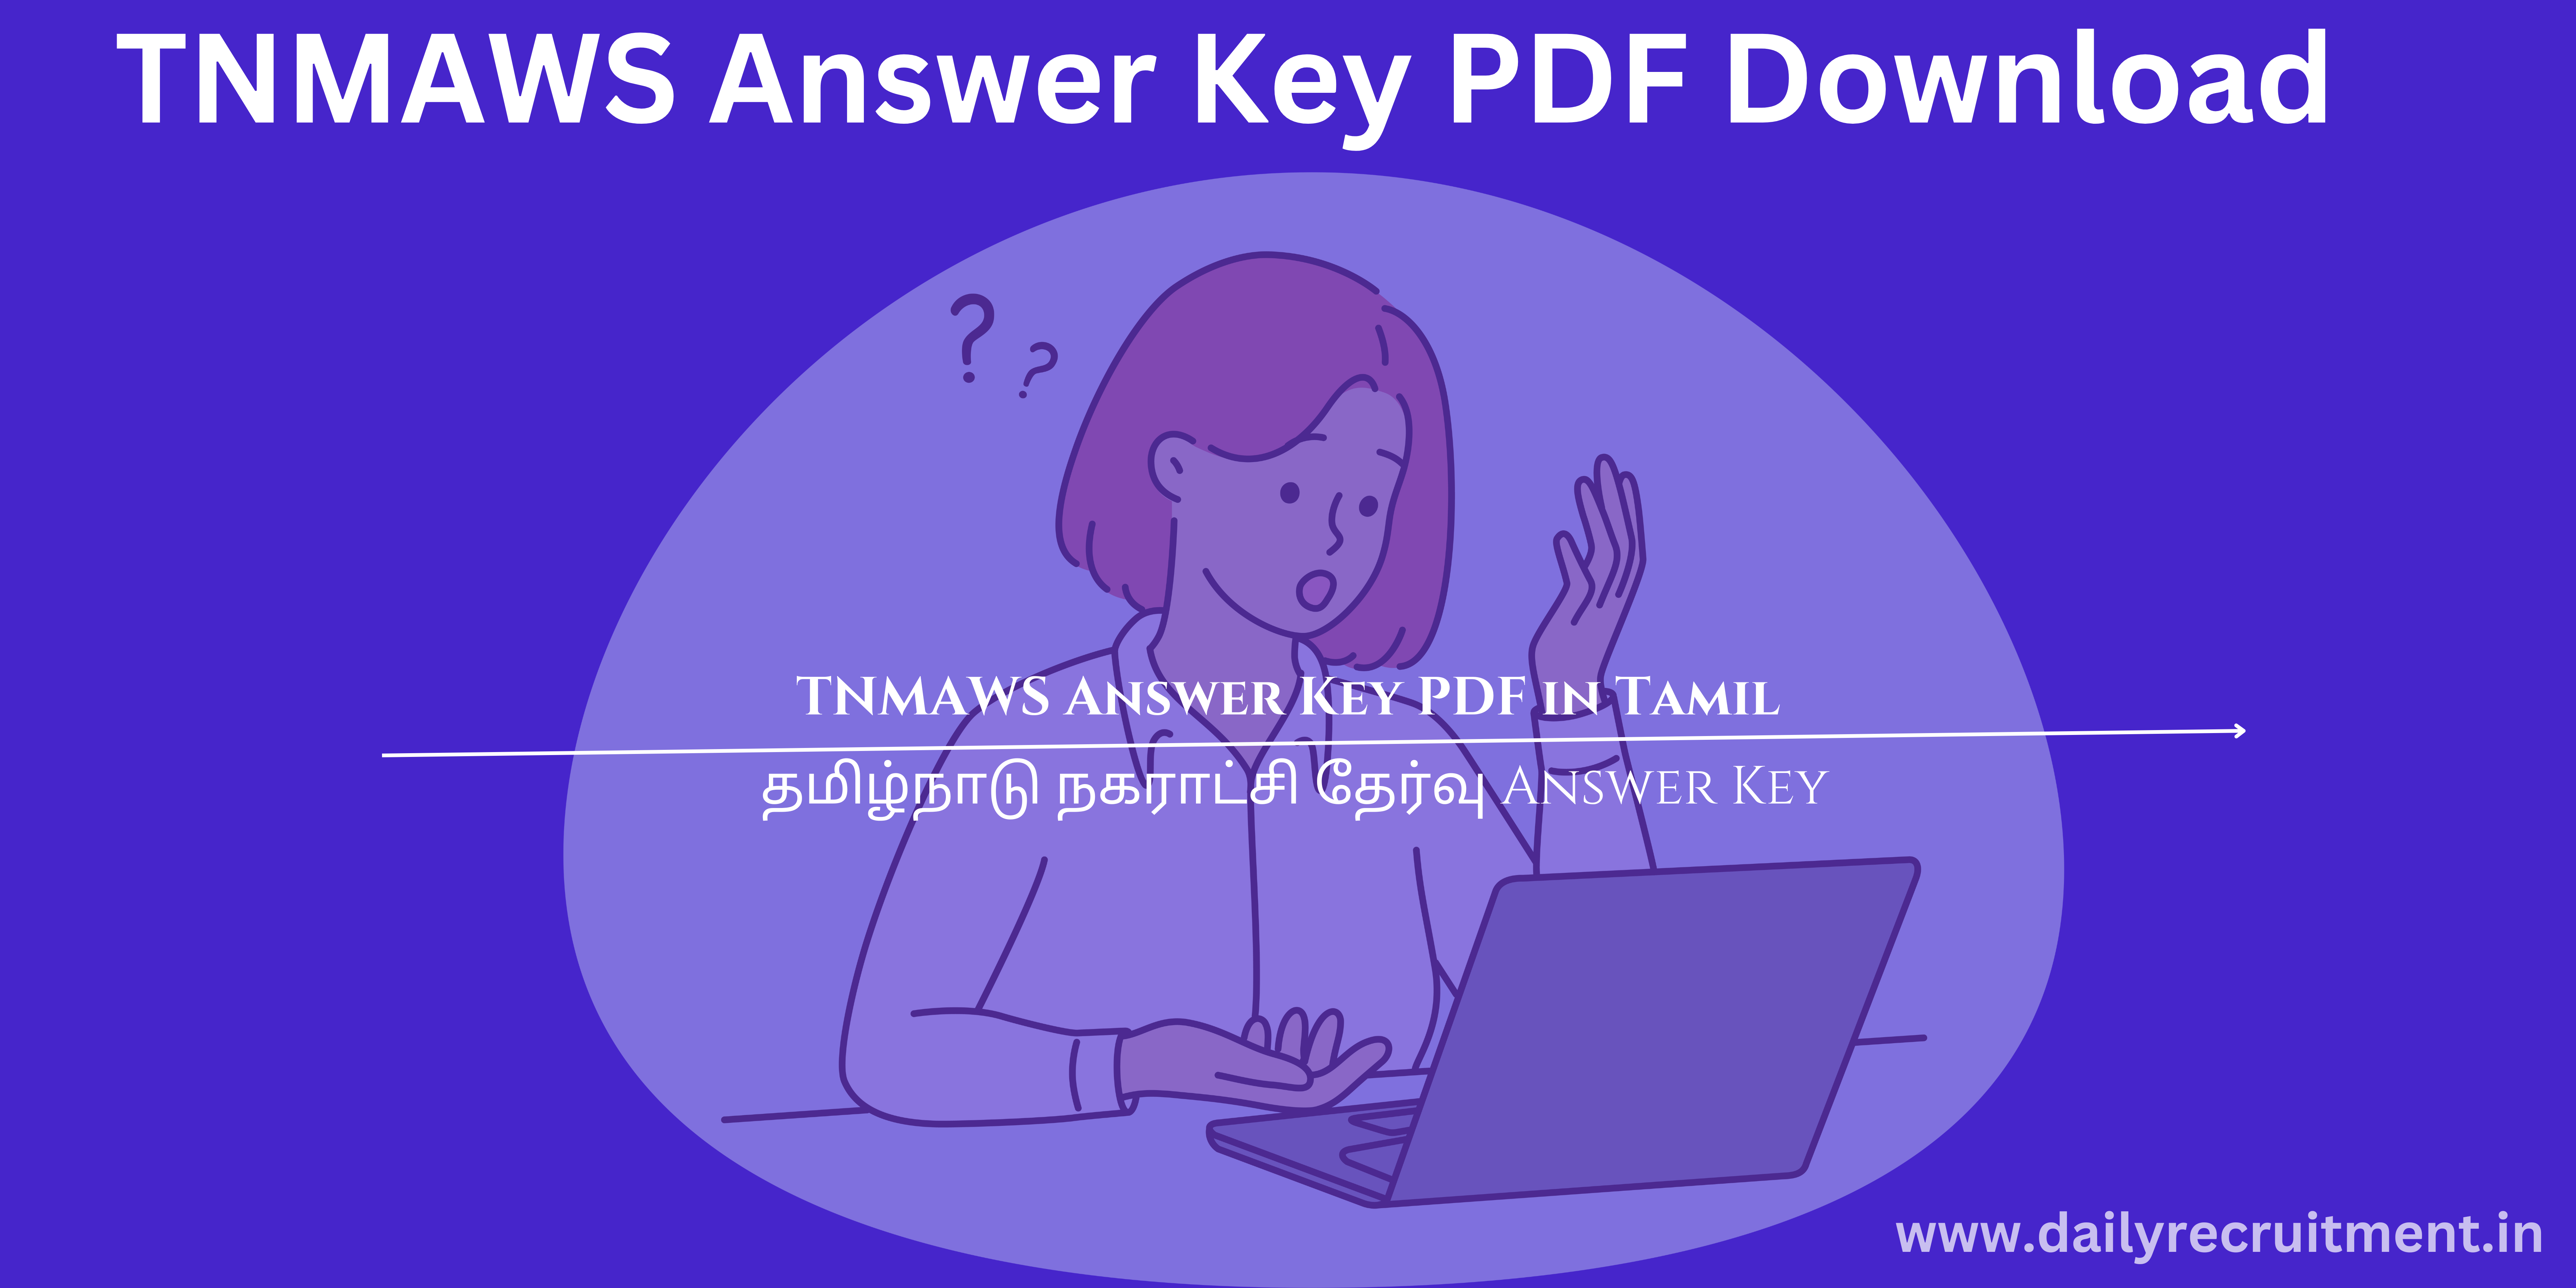 TNMAWS Answer Key PDF Download